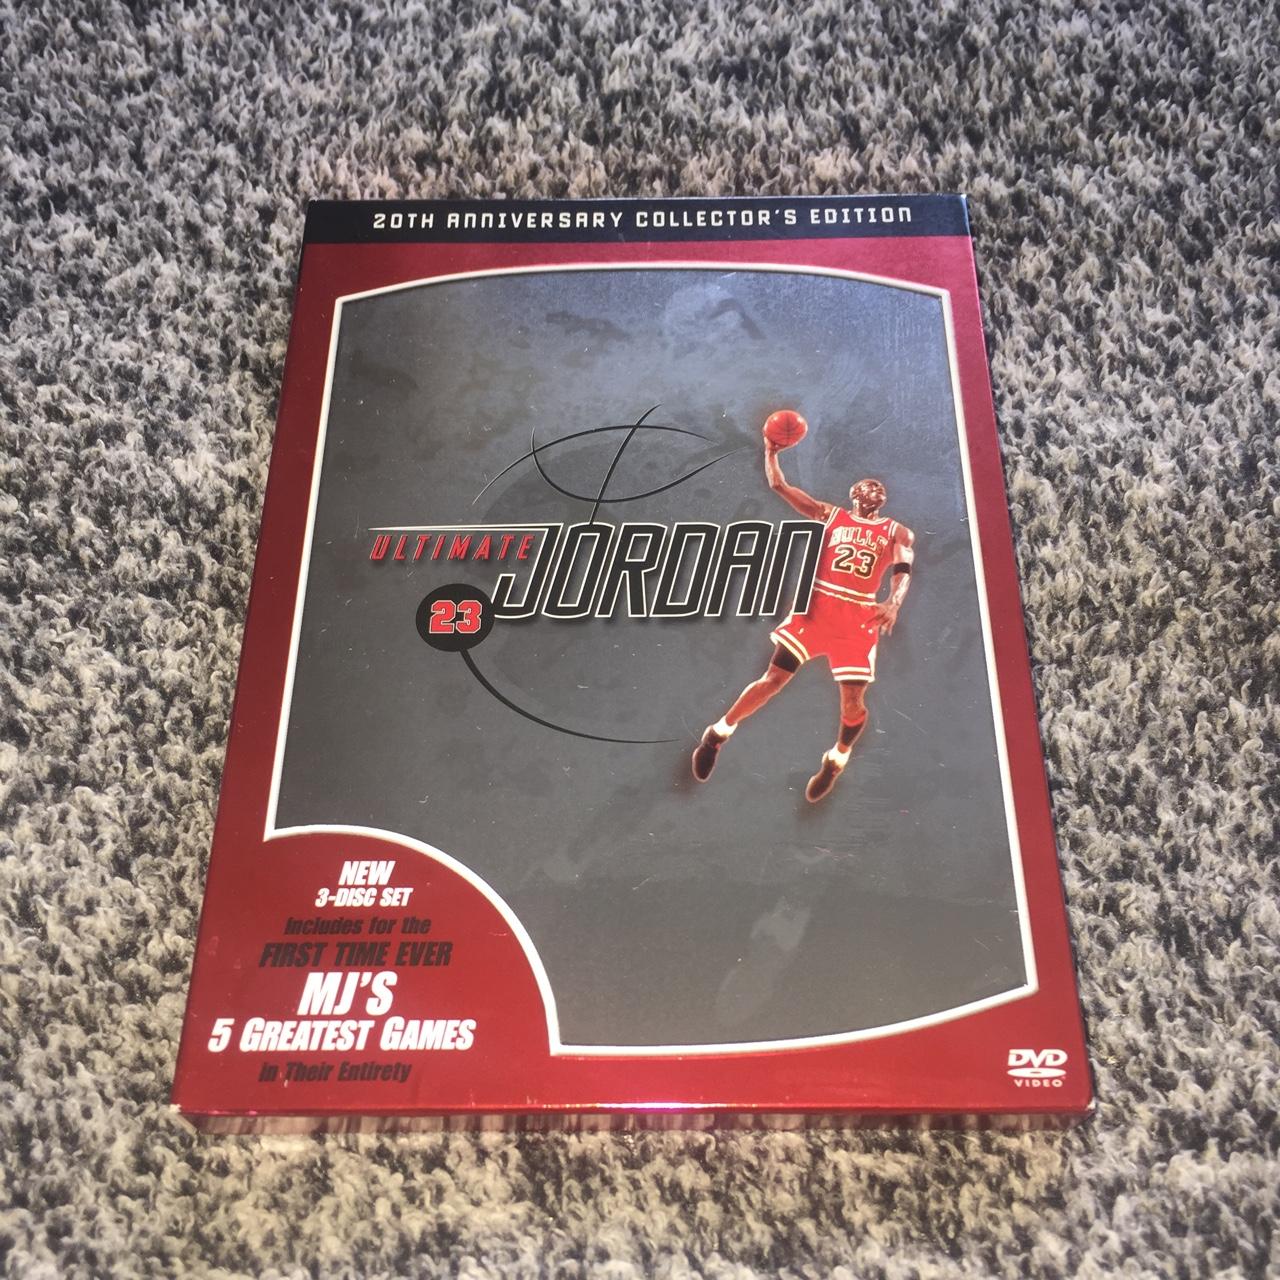 Ultimate Jordan (dvd)